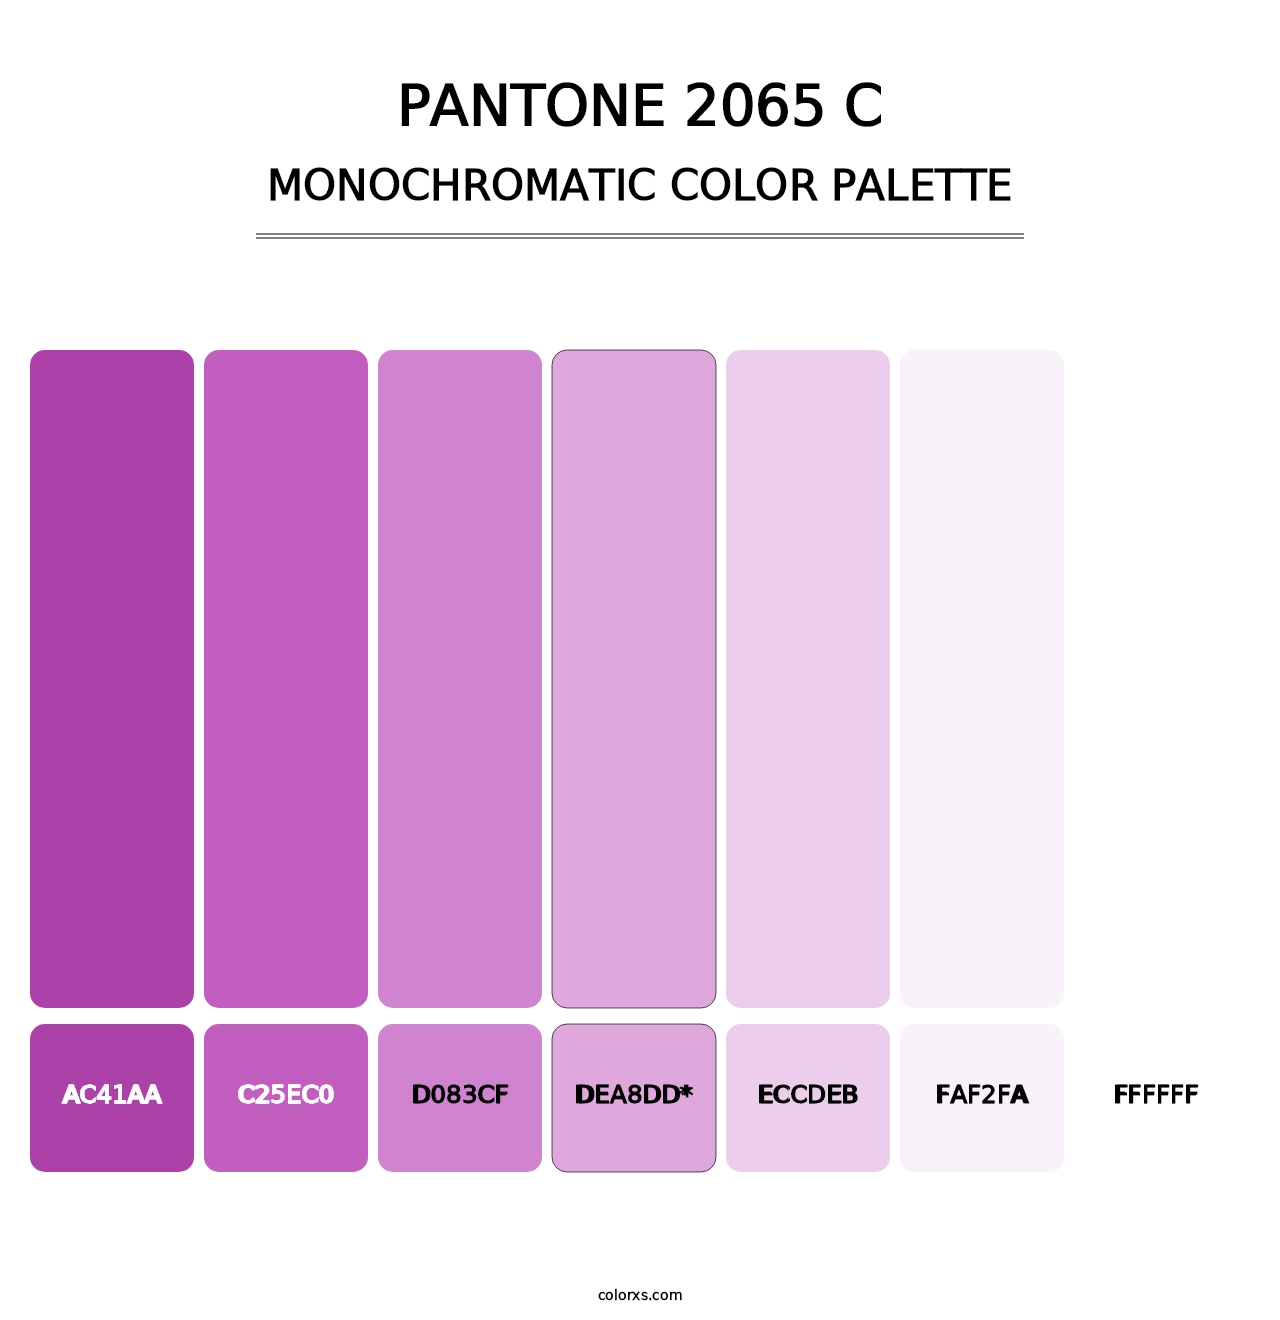 PANTONE 2065 C - Monochromatic Color Palette